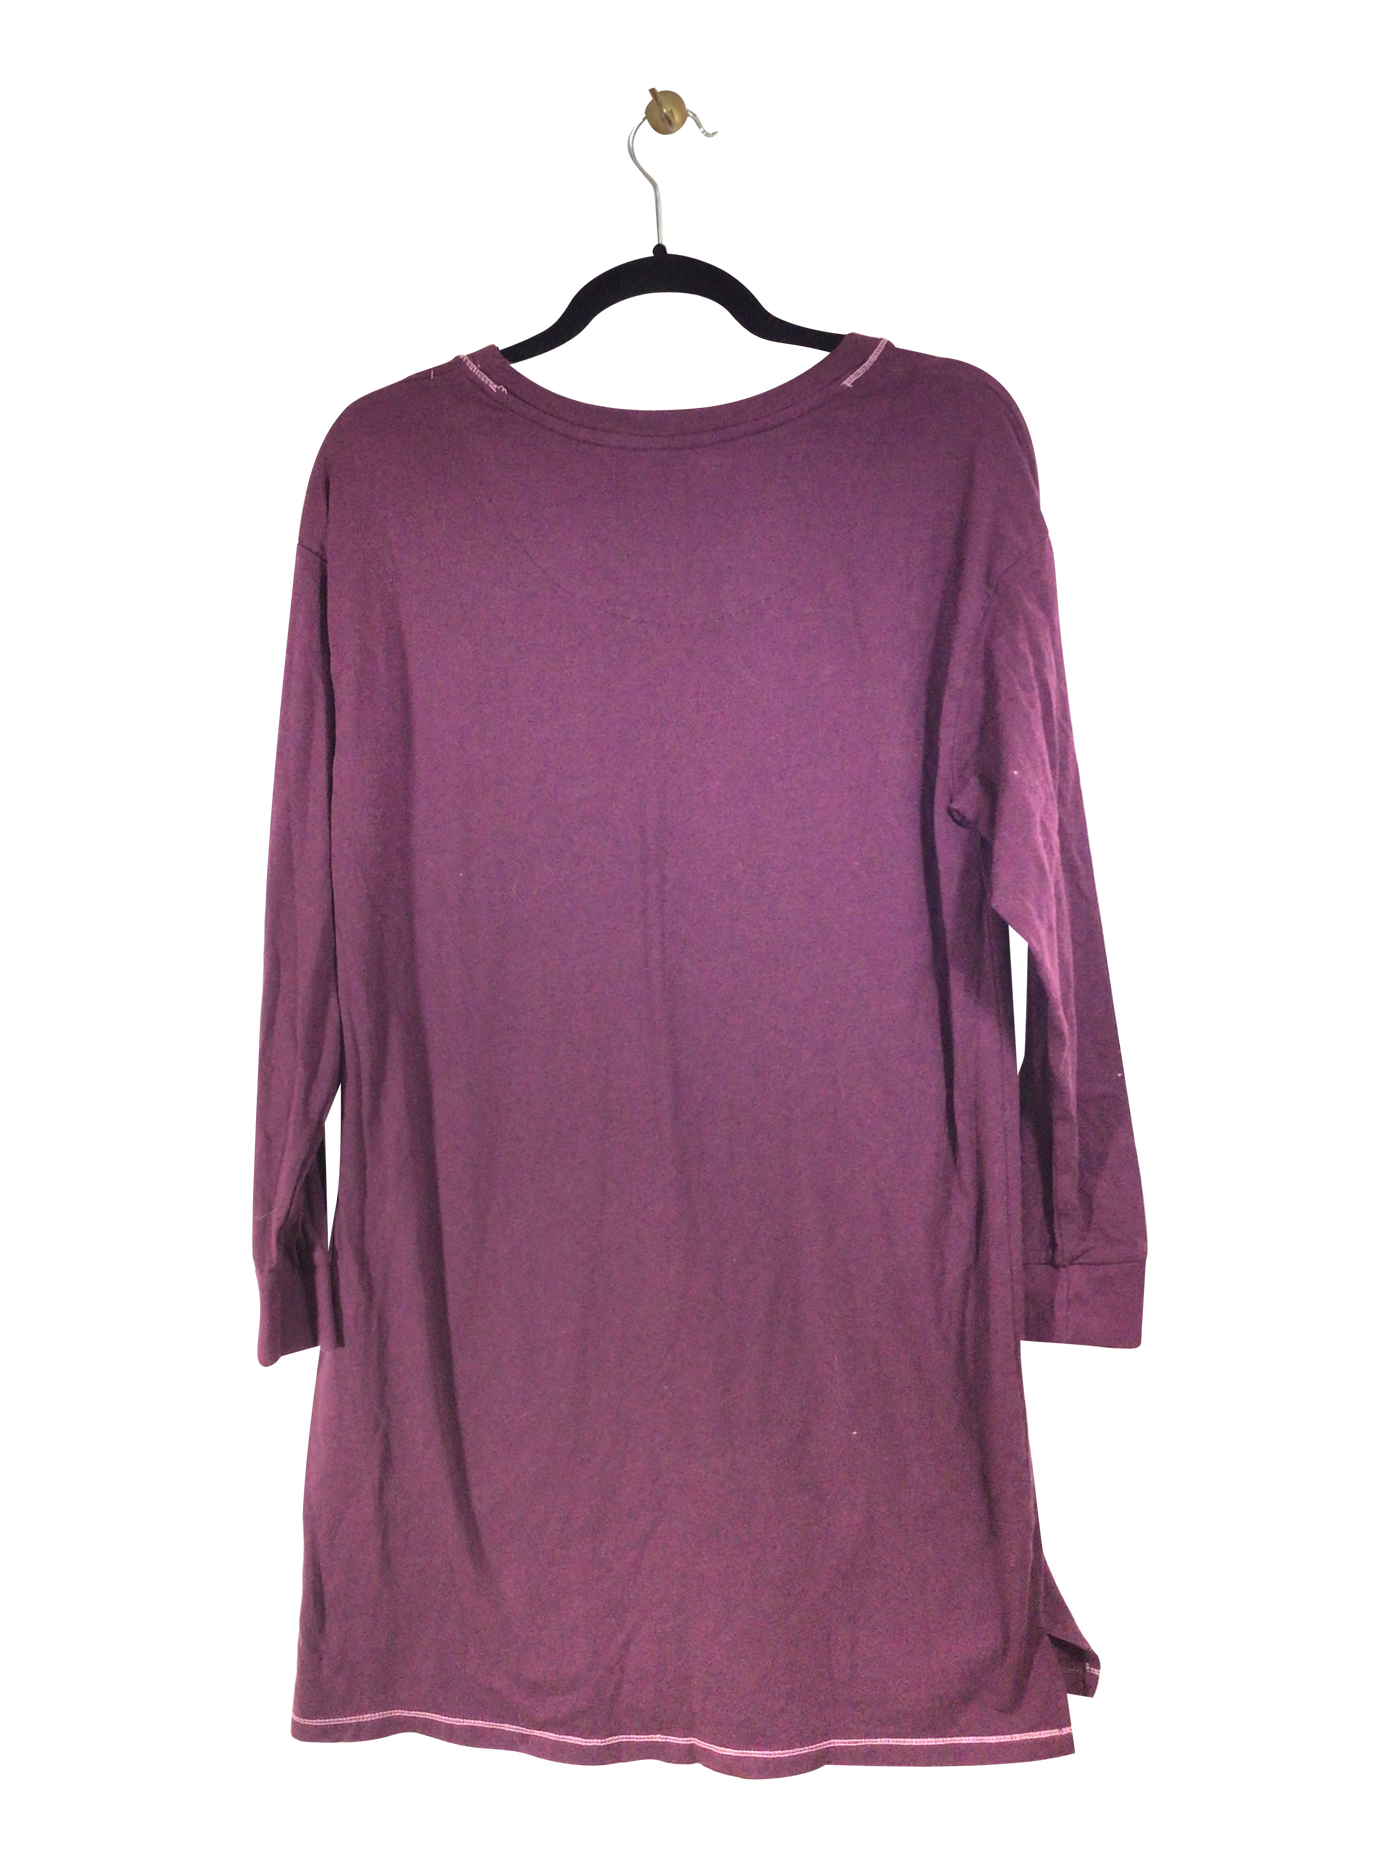 EMILY JANE Women Night Wear Regular fit in Purple - Size M | 15 $ KOOP